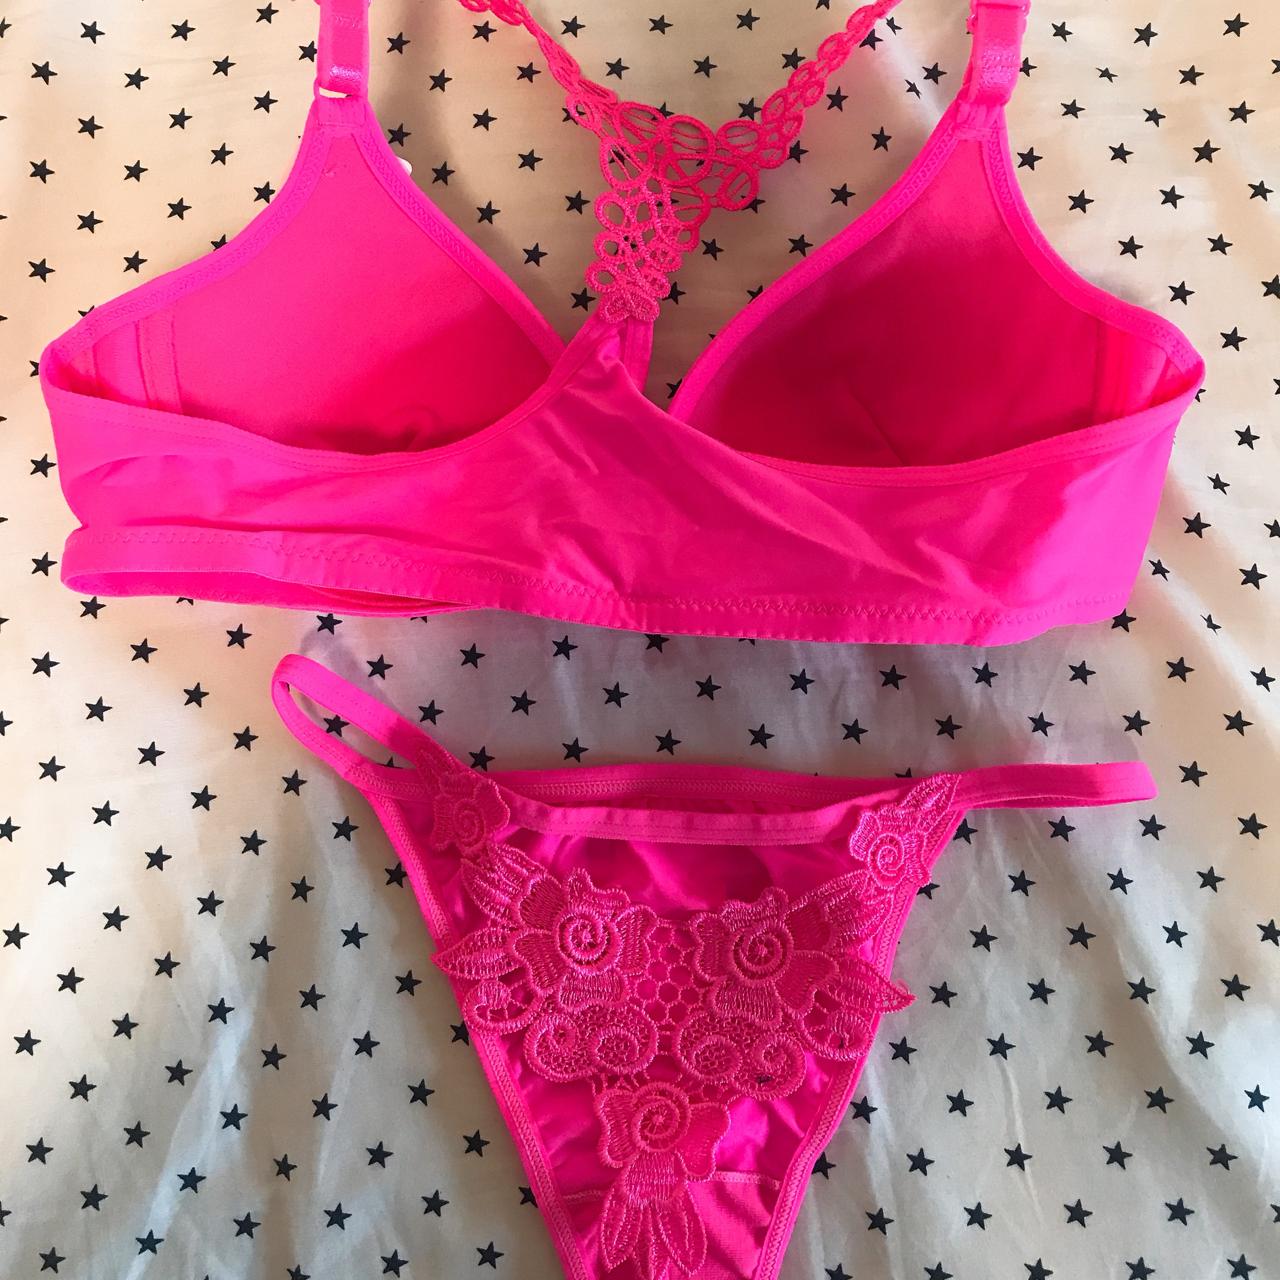 Belle Nuits Pink Bra & Panty Sets at Rs 399/set